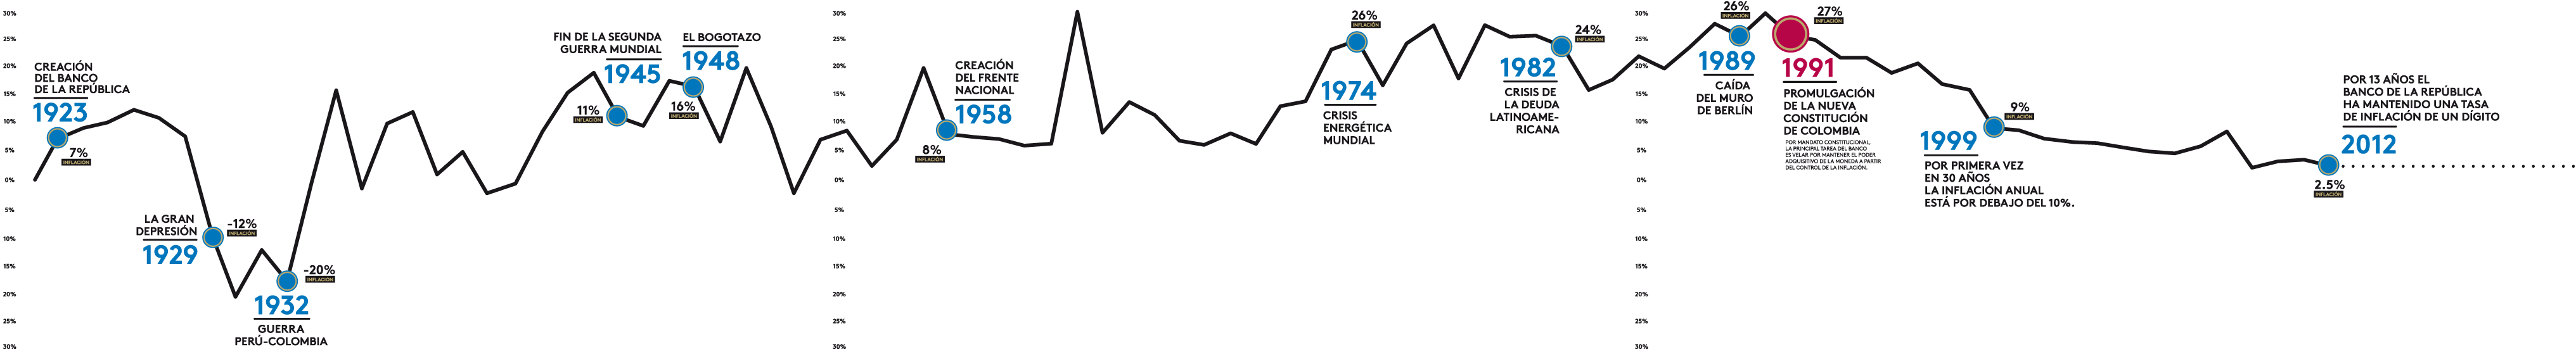 grafica inflacion de colombia 1922-2012